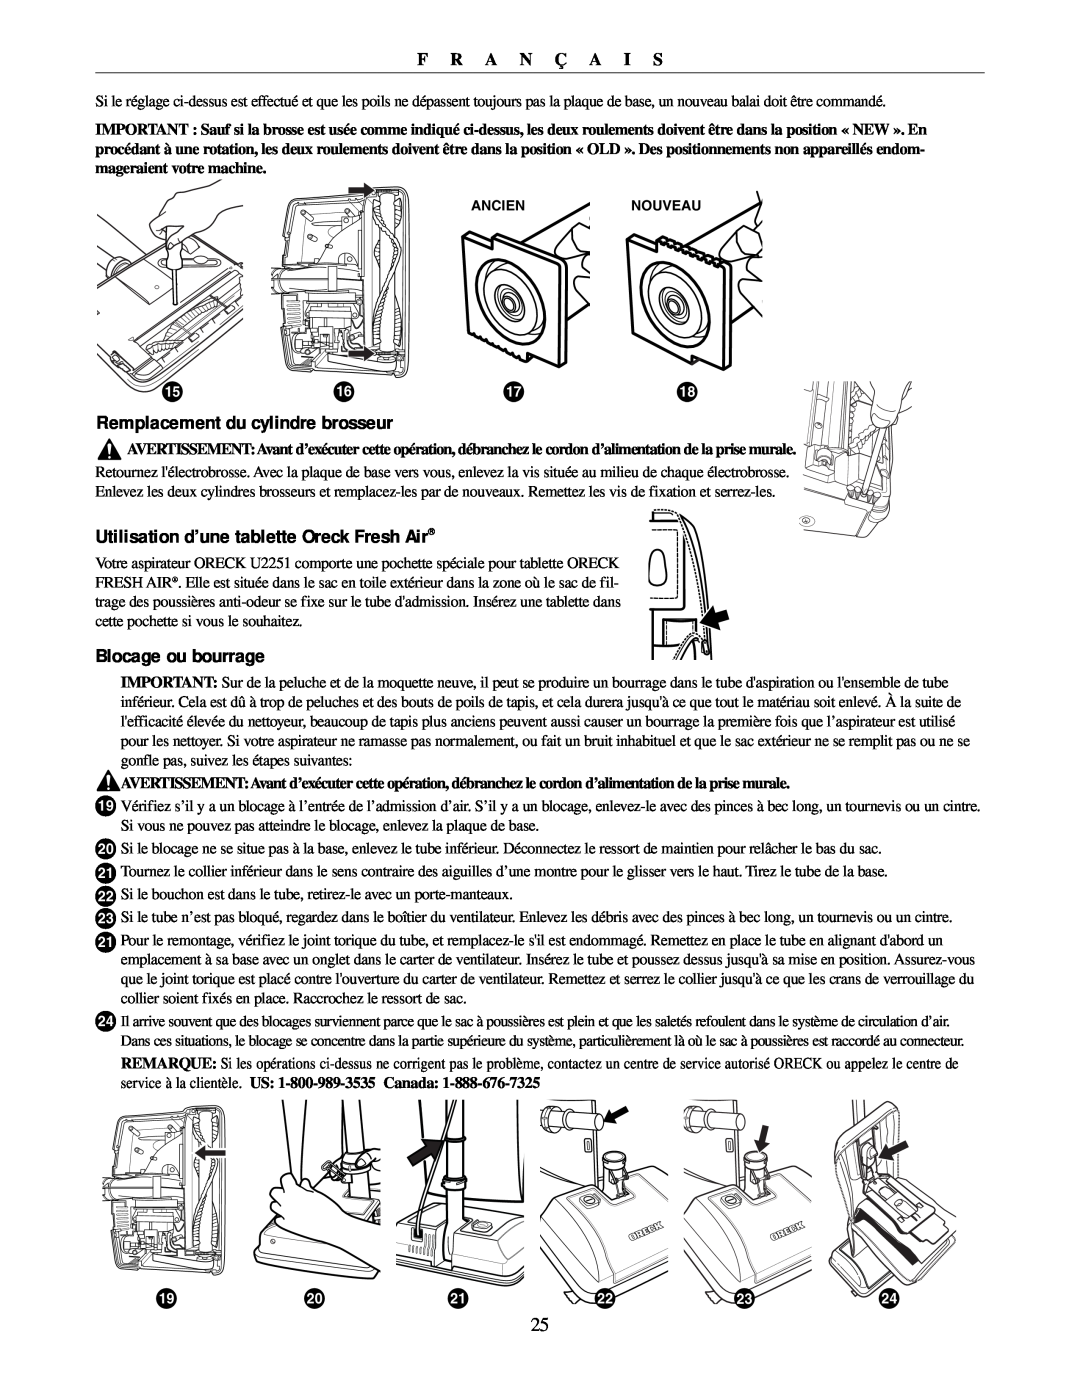 Oreck U2251 manual Remplacement du cylindre brosseur, Utilisation d’une tablette Oreck Fresh Air, Blocage ou bourrage 